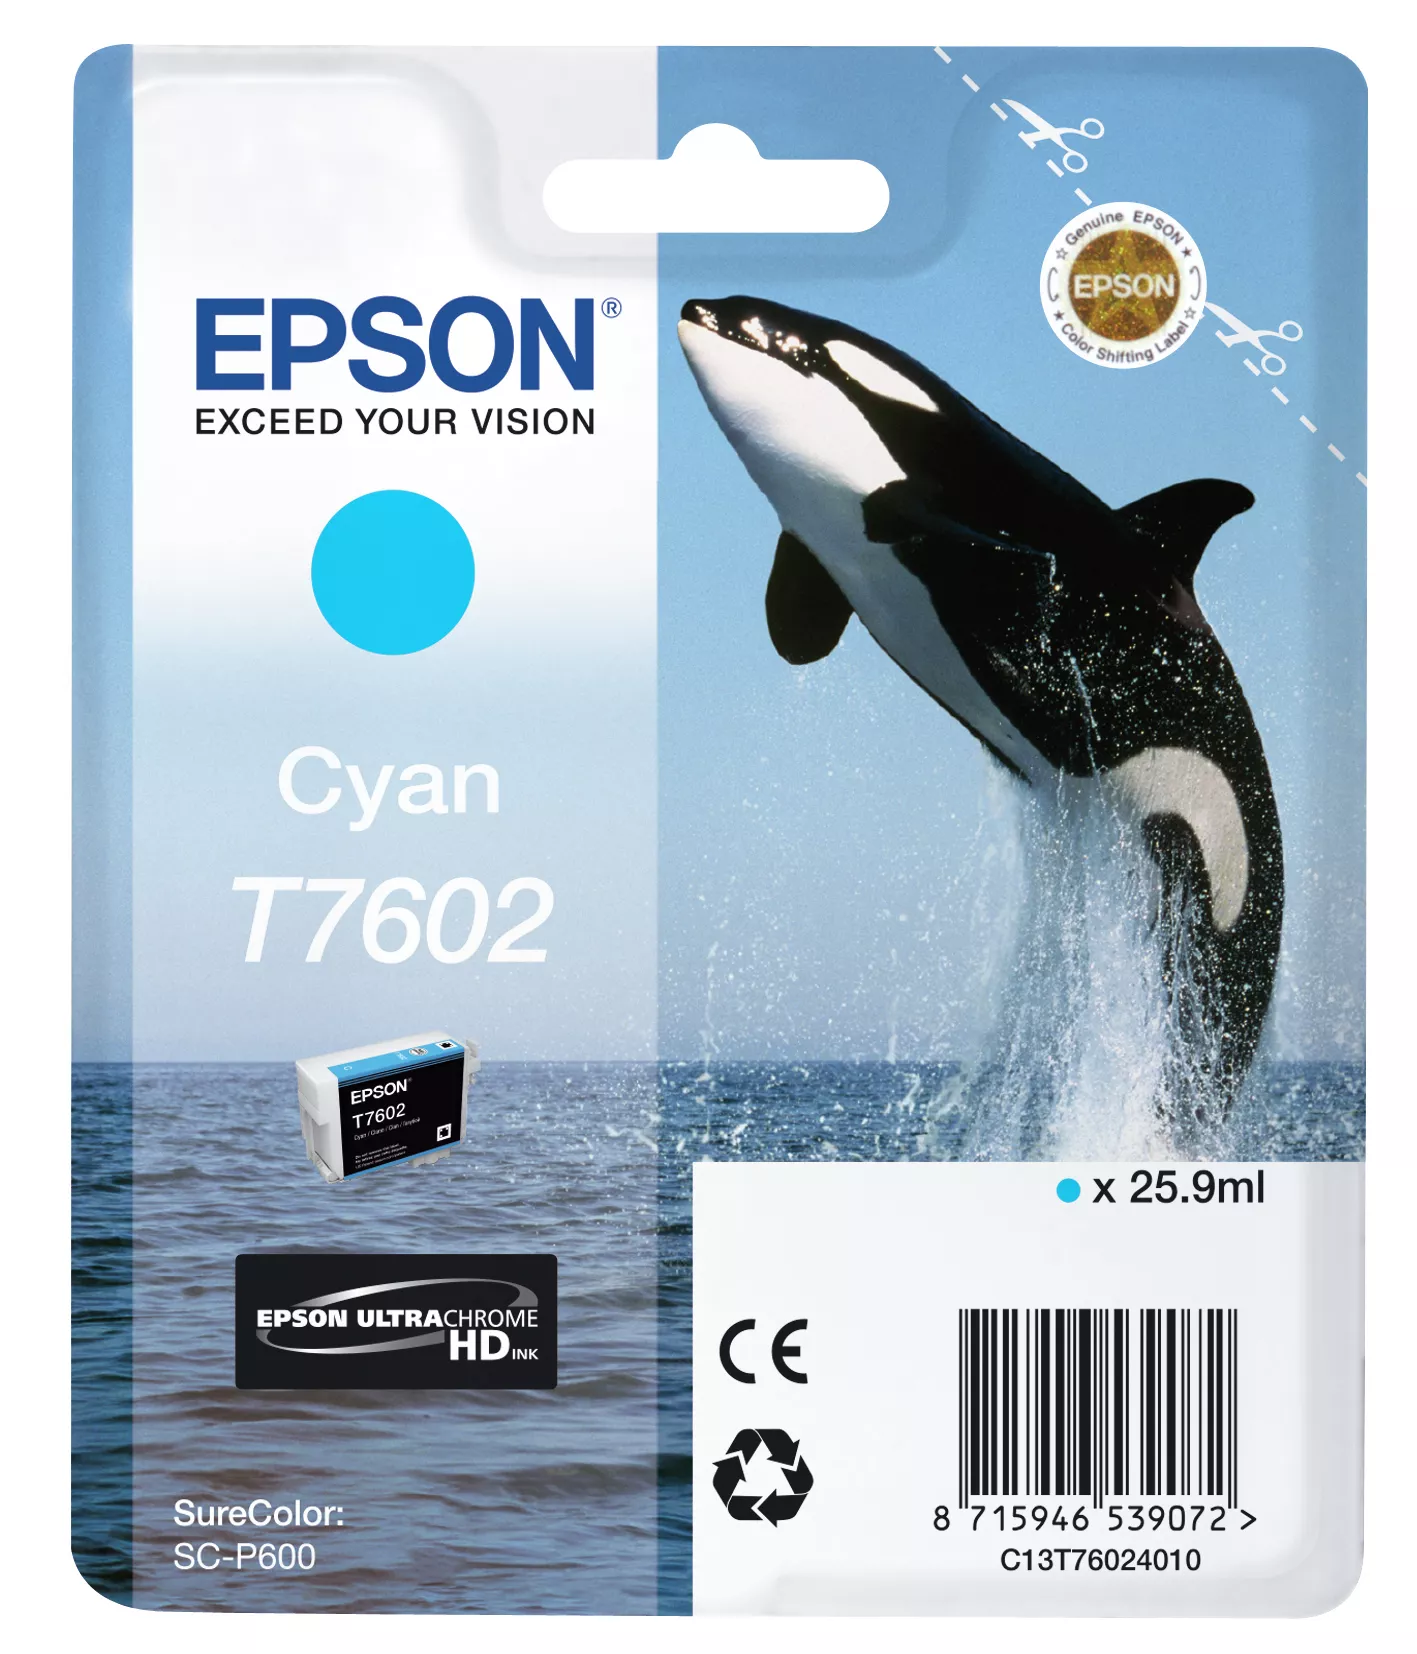 Achat EPSON T7602 cartouche dencre cyan haute capacité 25,9ml au meilleur prix